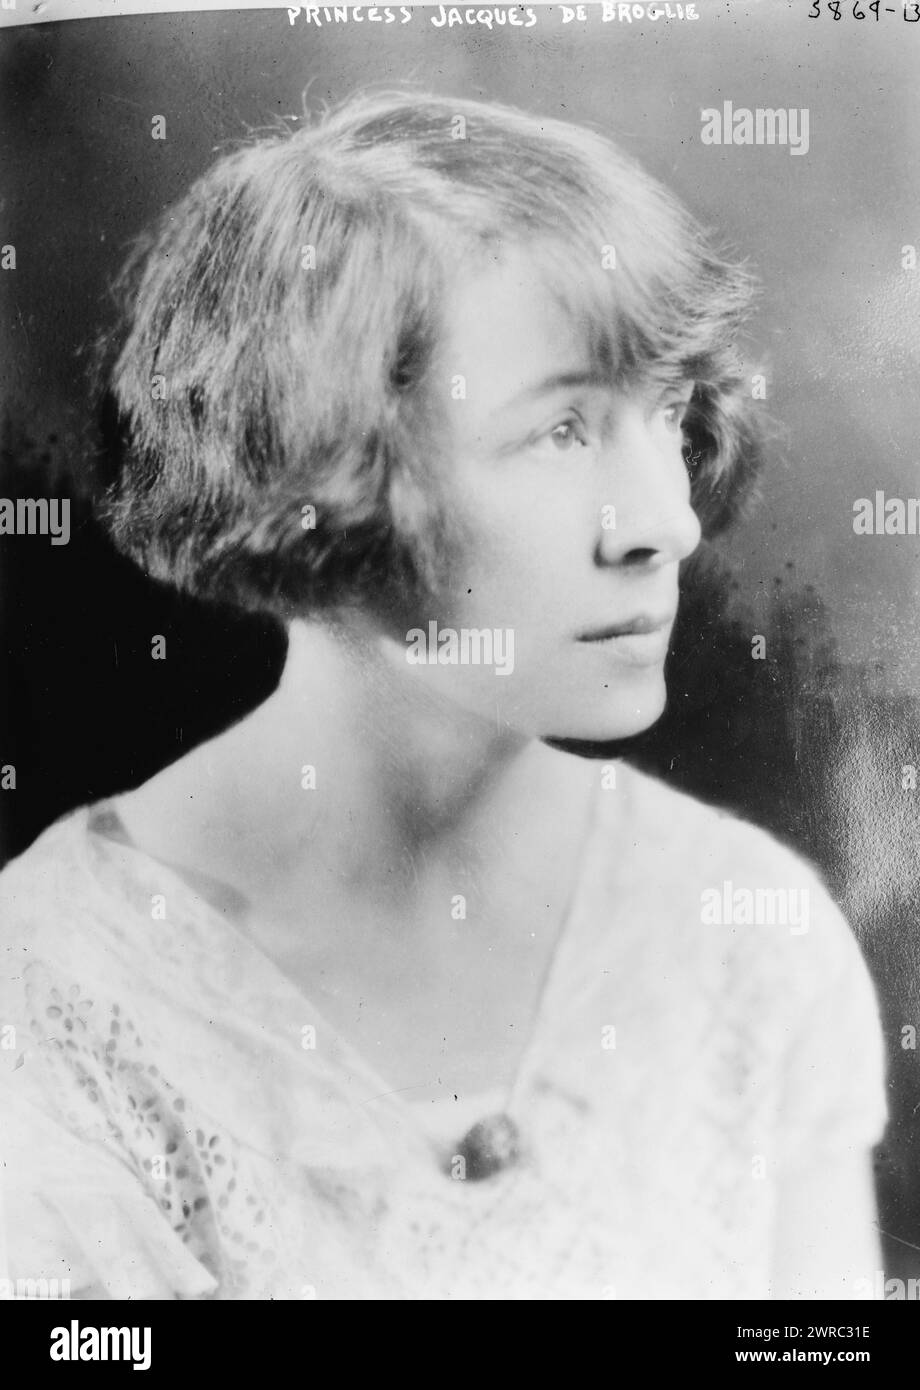 Princesse Jacques de Broglie, photographie montre probablement Marie Antoinette Aussenac, pianiste, qui épousa le prince Jacques de Broglie en 1926., 1926, négatifs en verre, 1 négatif : verre Banque D'Images